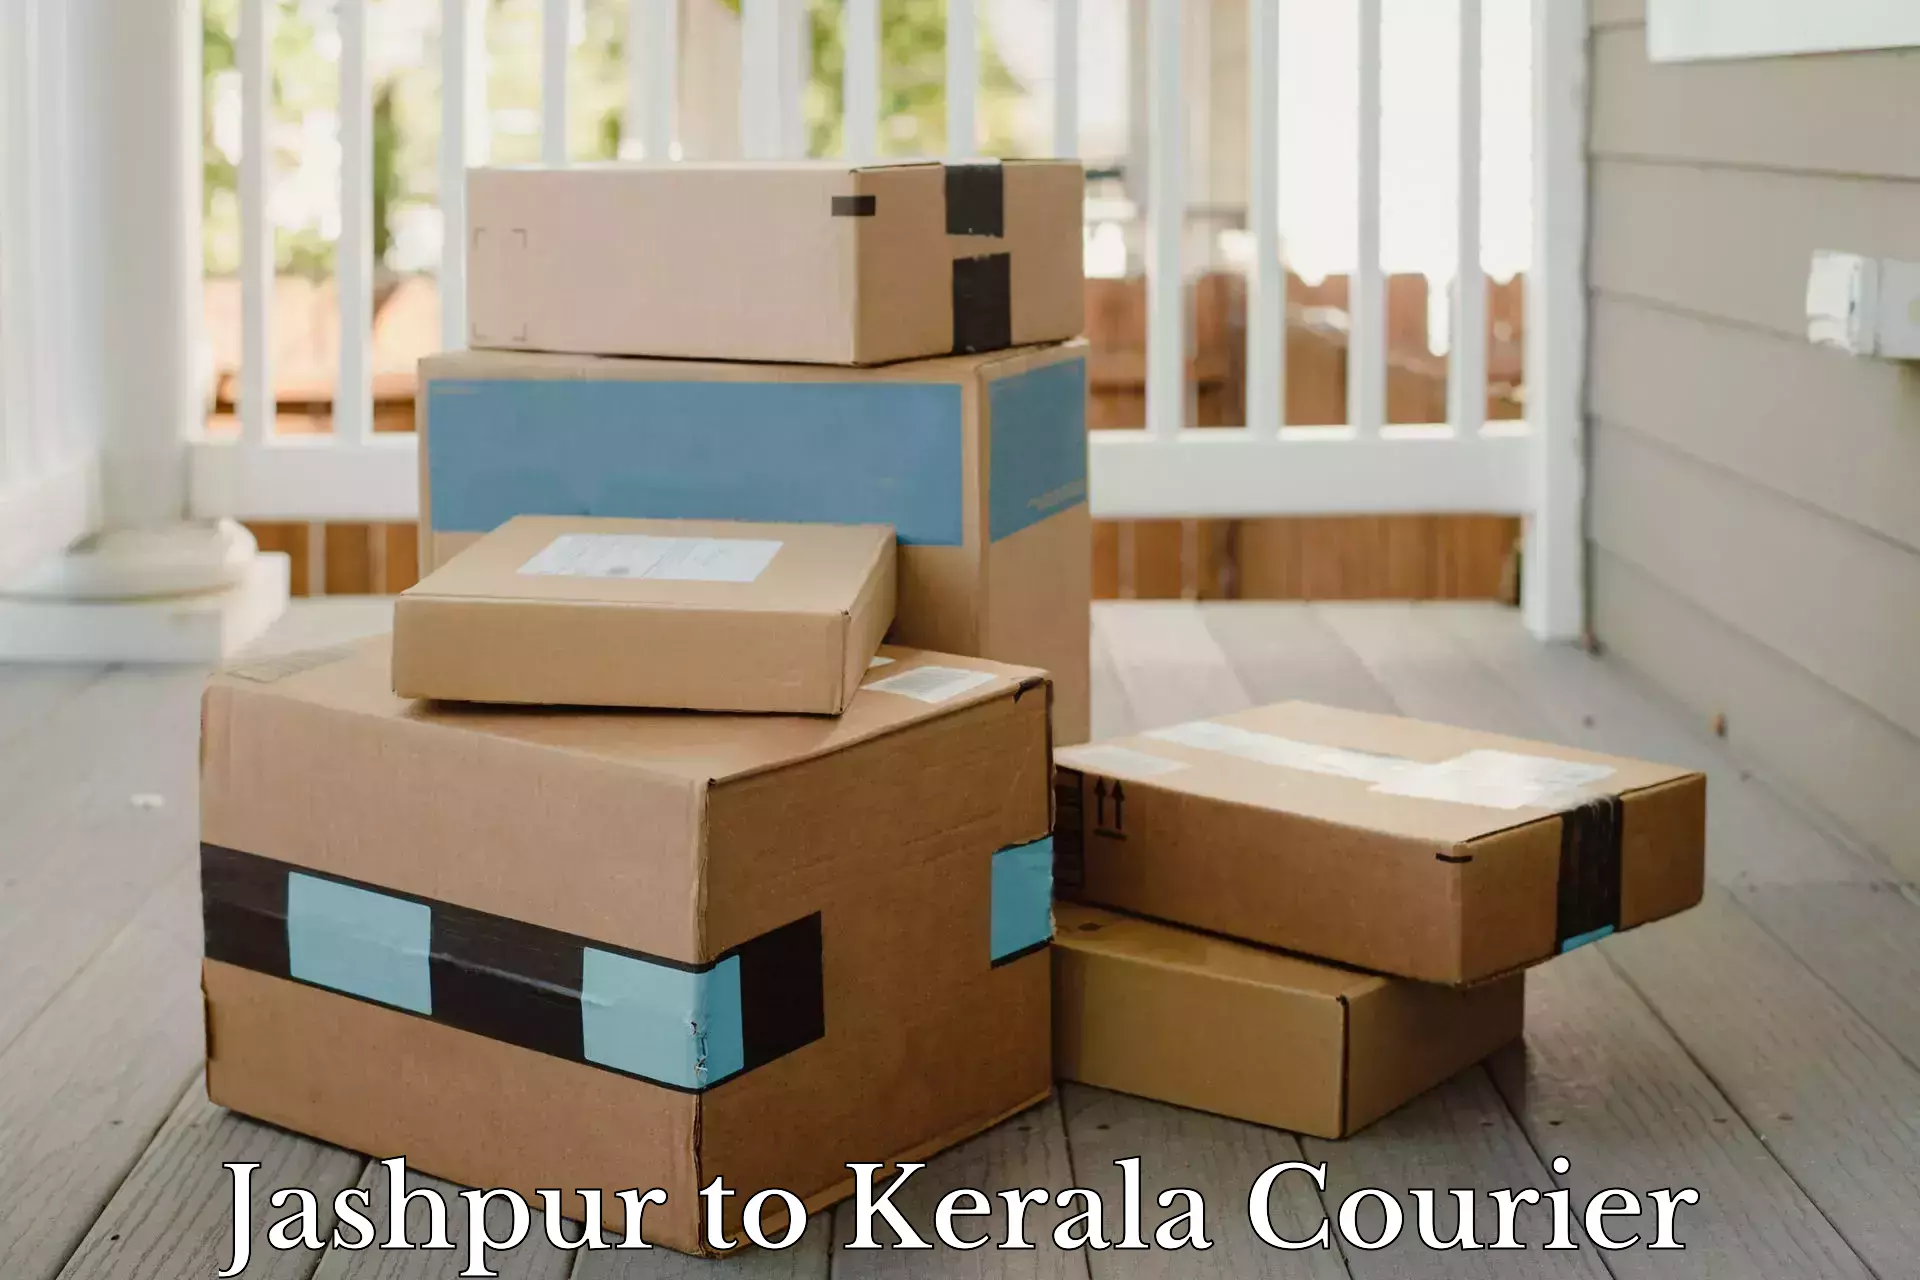 Door-to-door shipment in Jashpur to Kerala